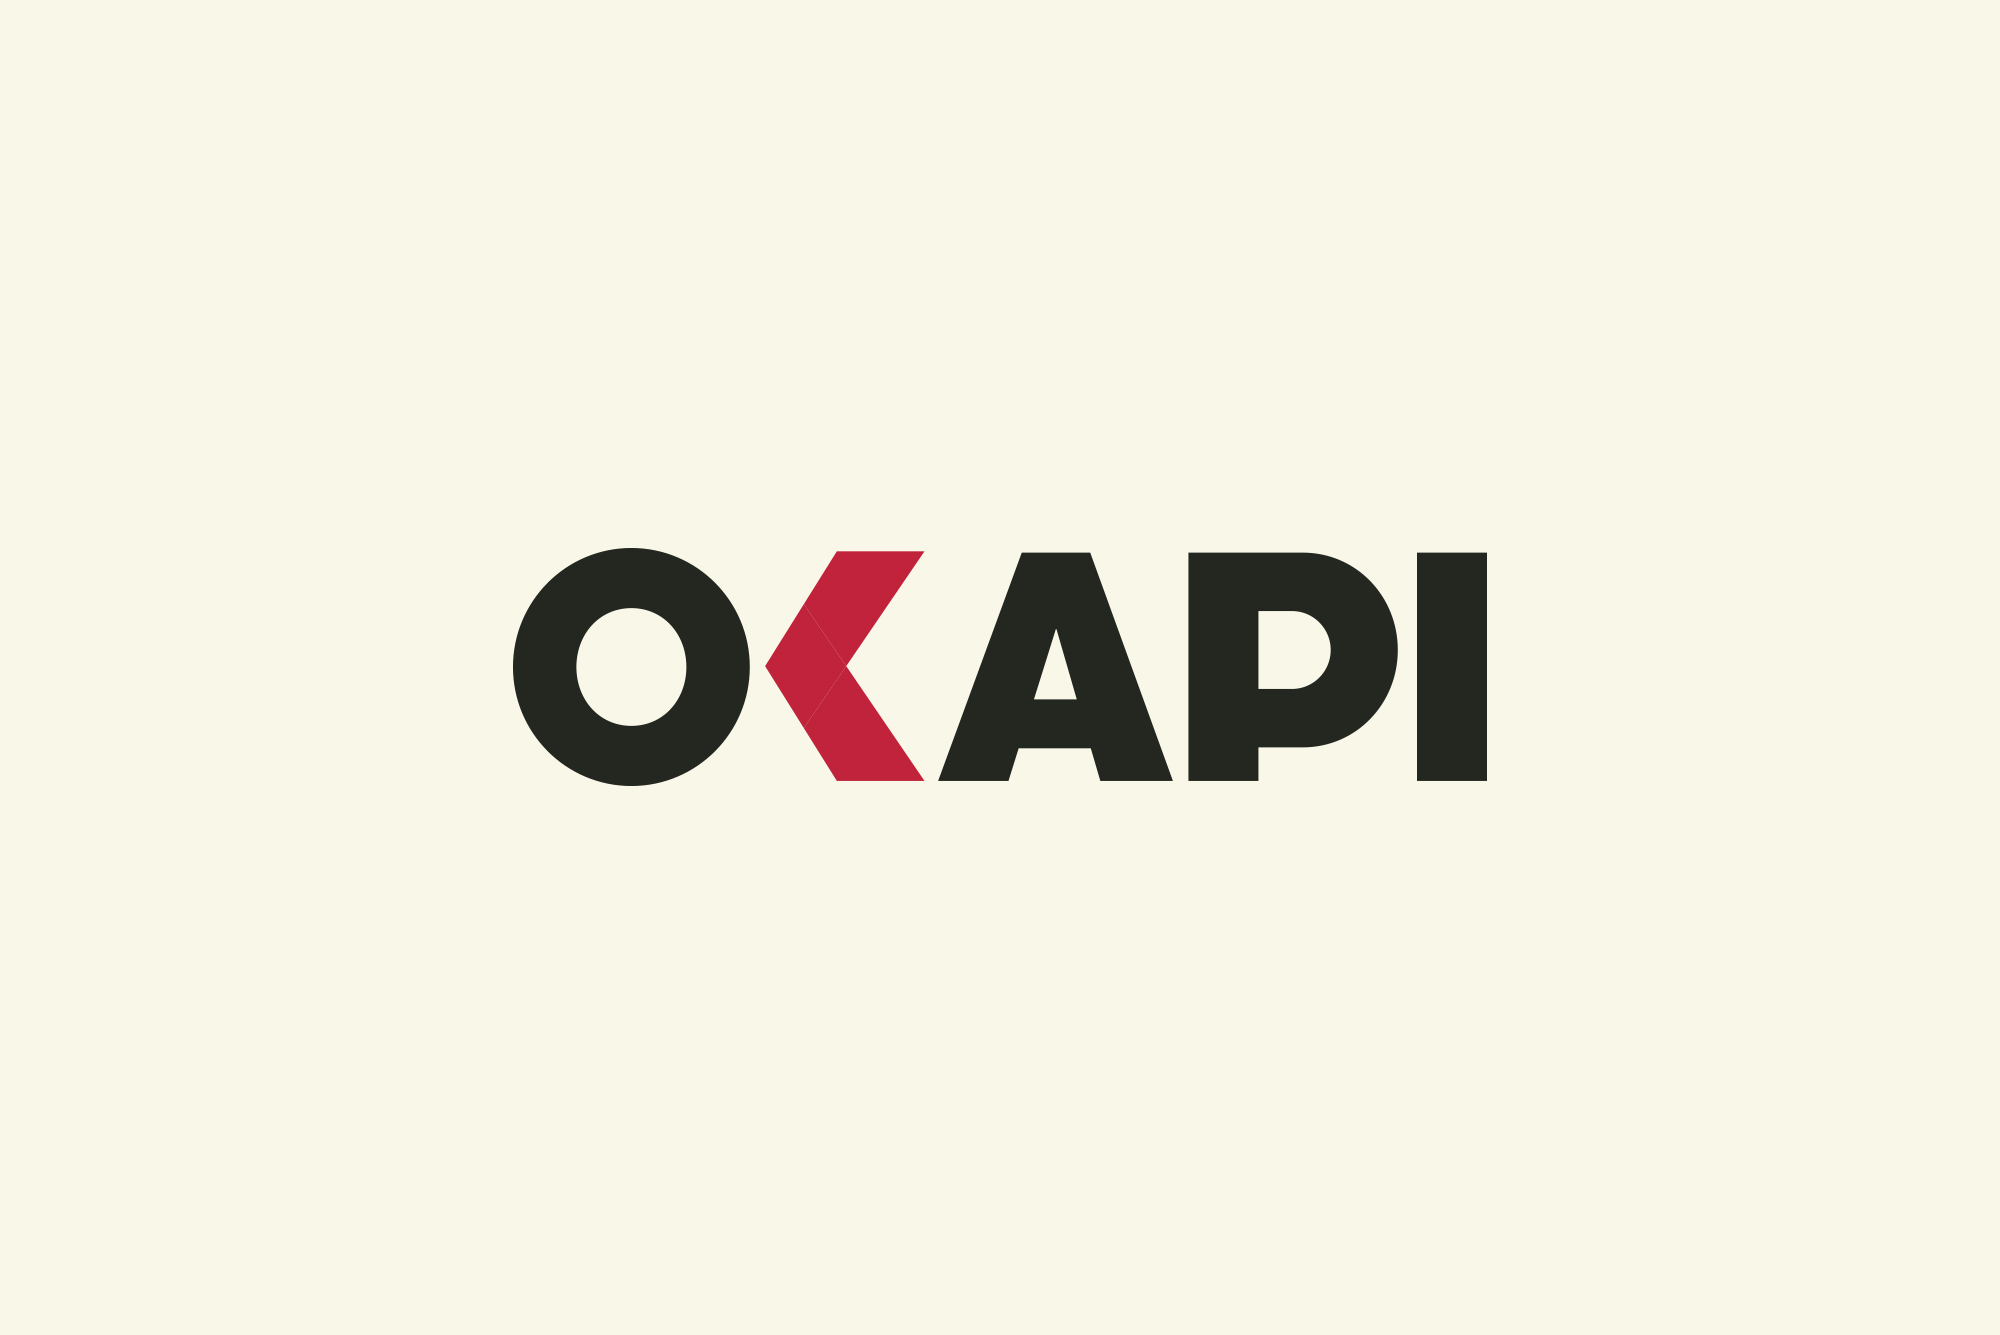 okapi